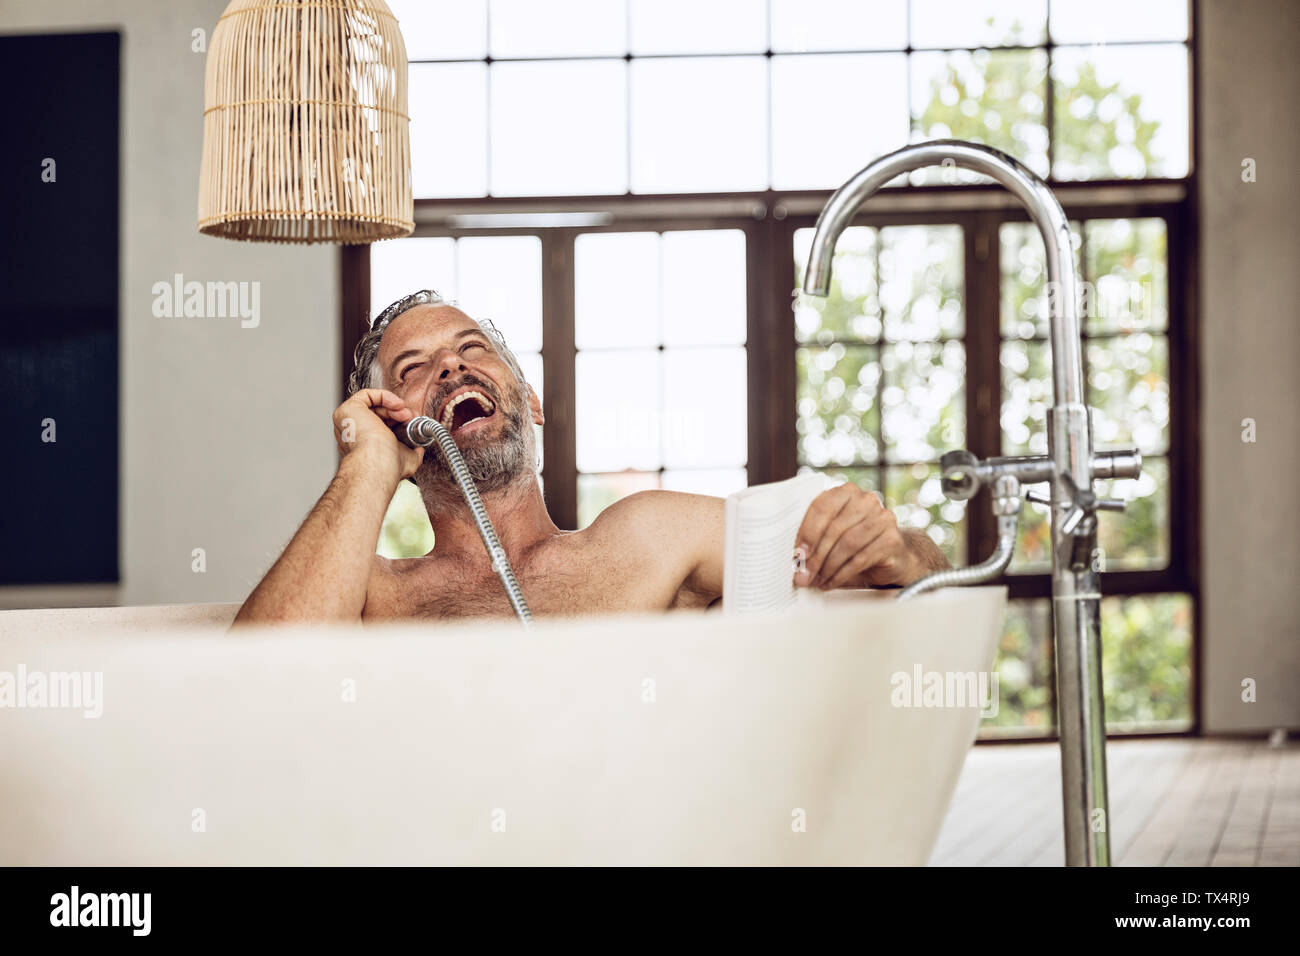 Laughing man à l'aide d'une baignoire douche tête comme récepteur du téléphone Banque D'Images